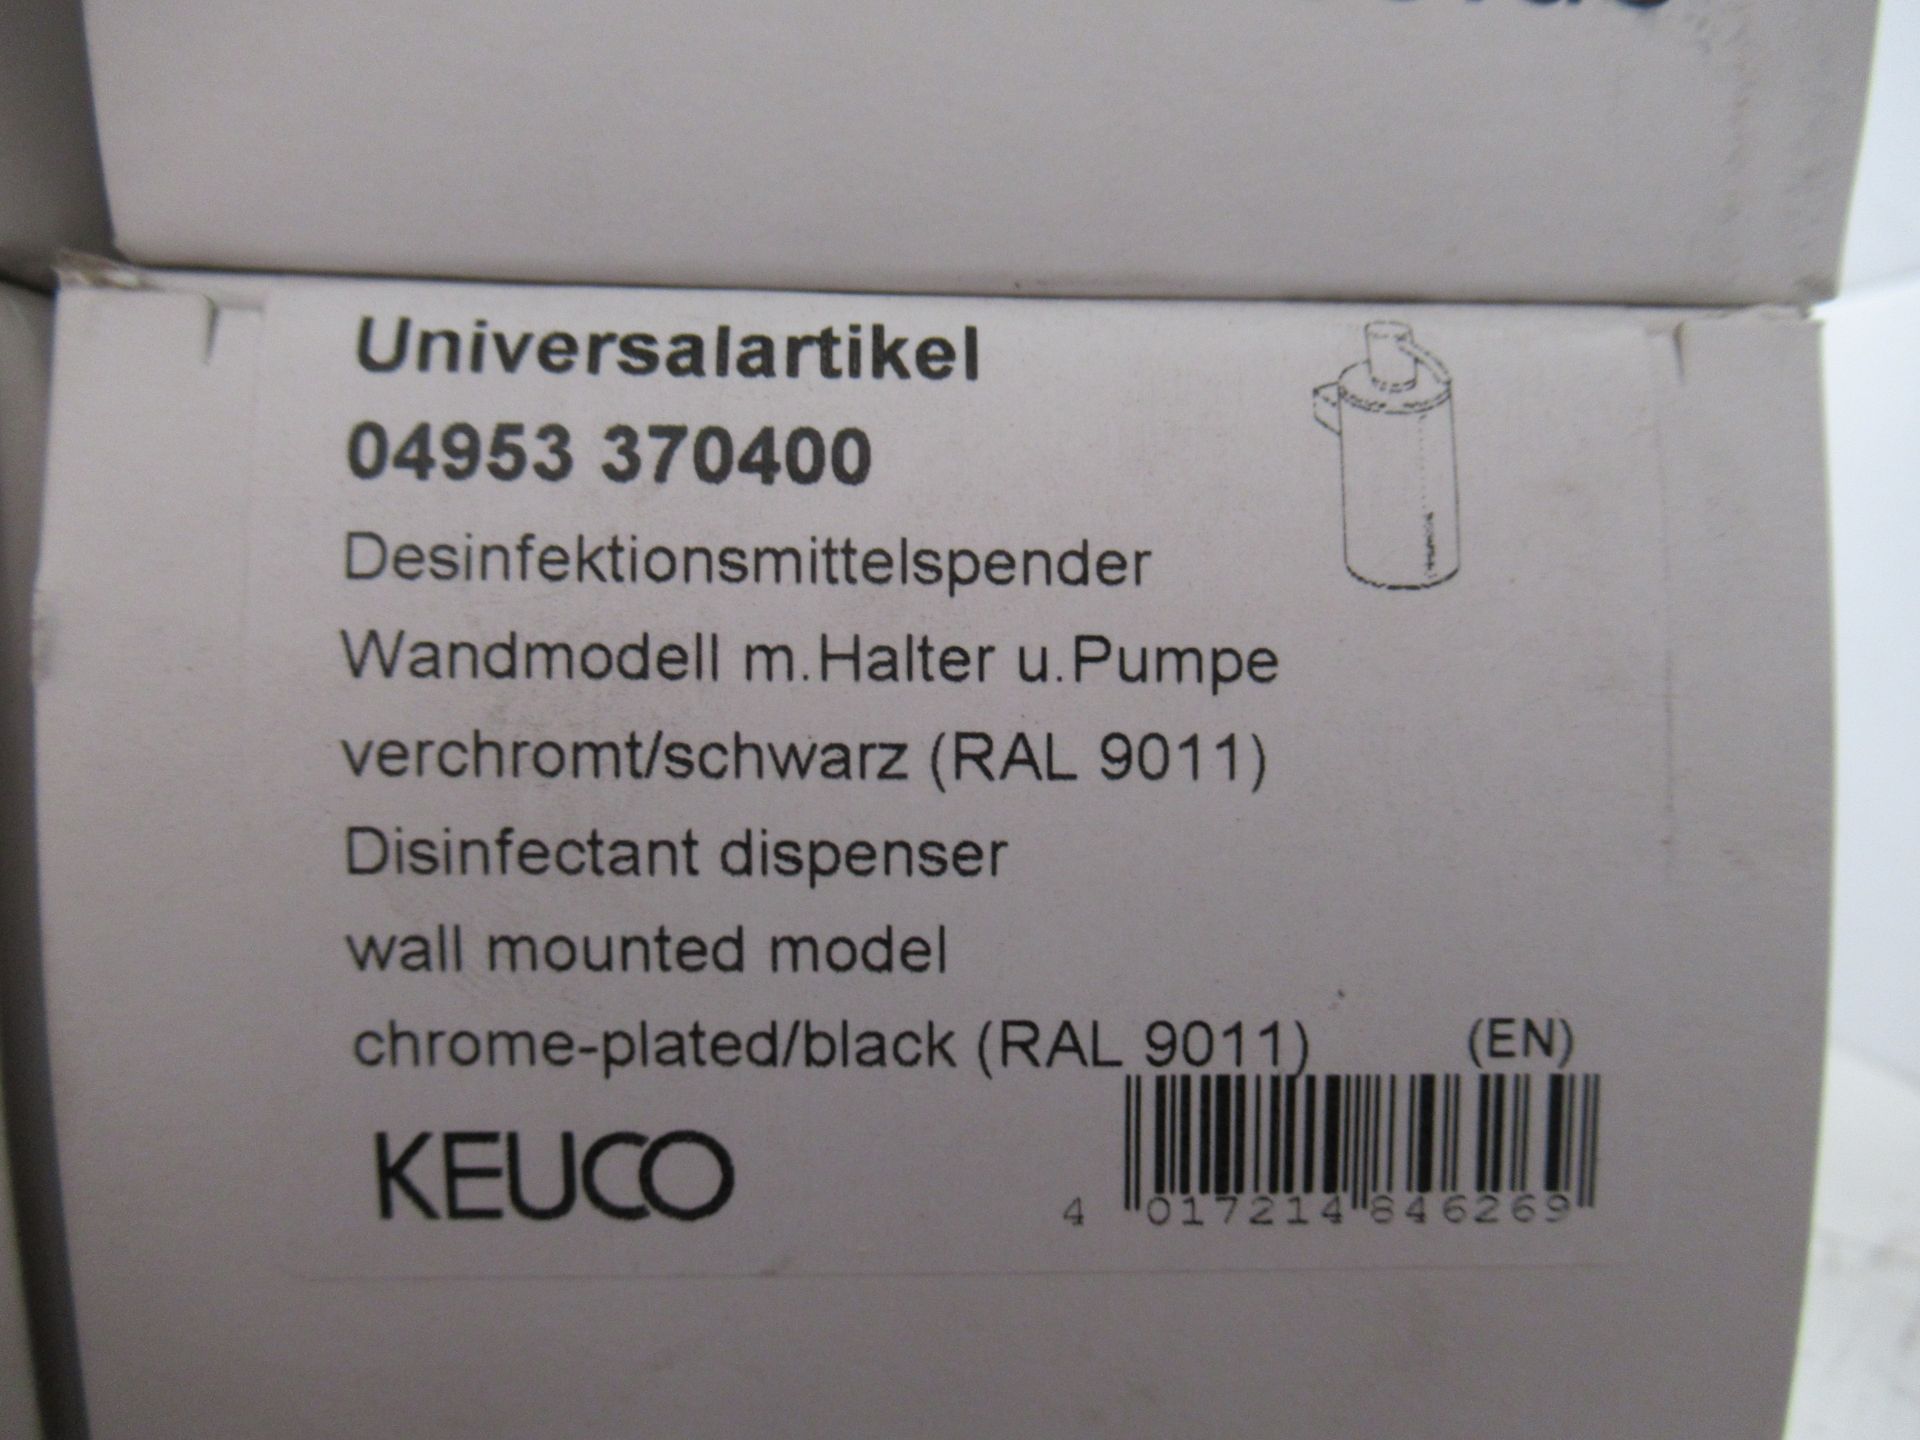 3 x Keuco Disinfectant Dispenser, Chrome Plated/Black, P/N 04952-370400 - Image 2 of 2